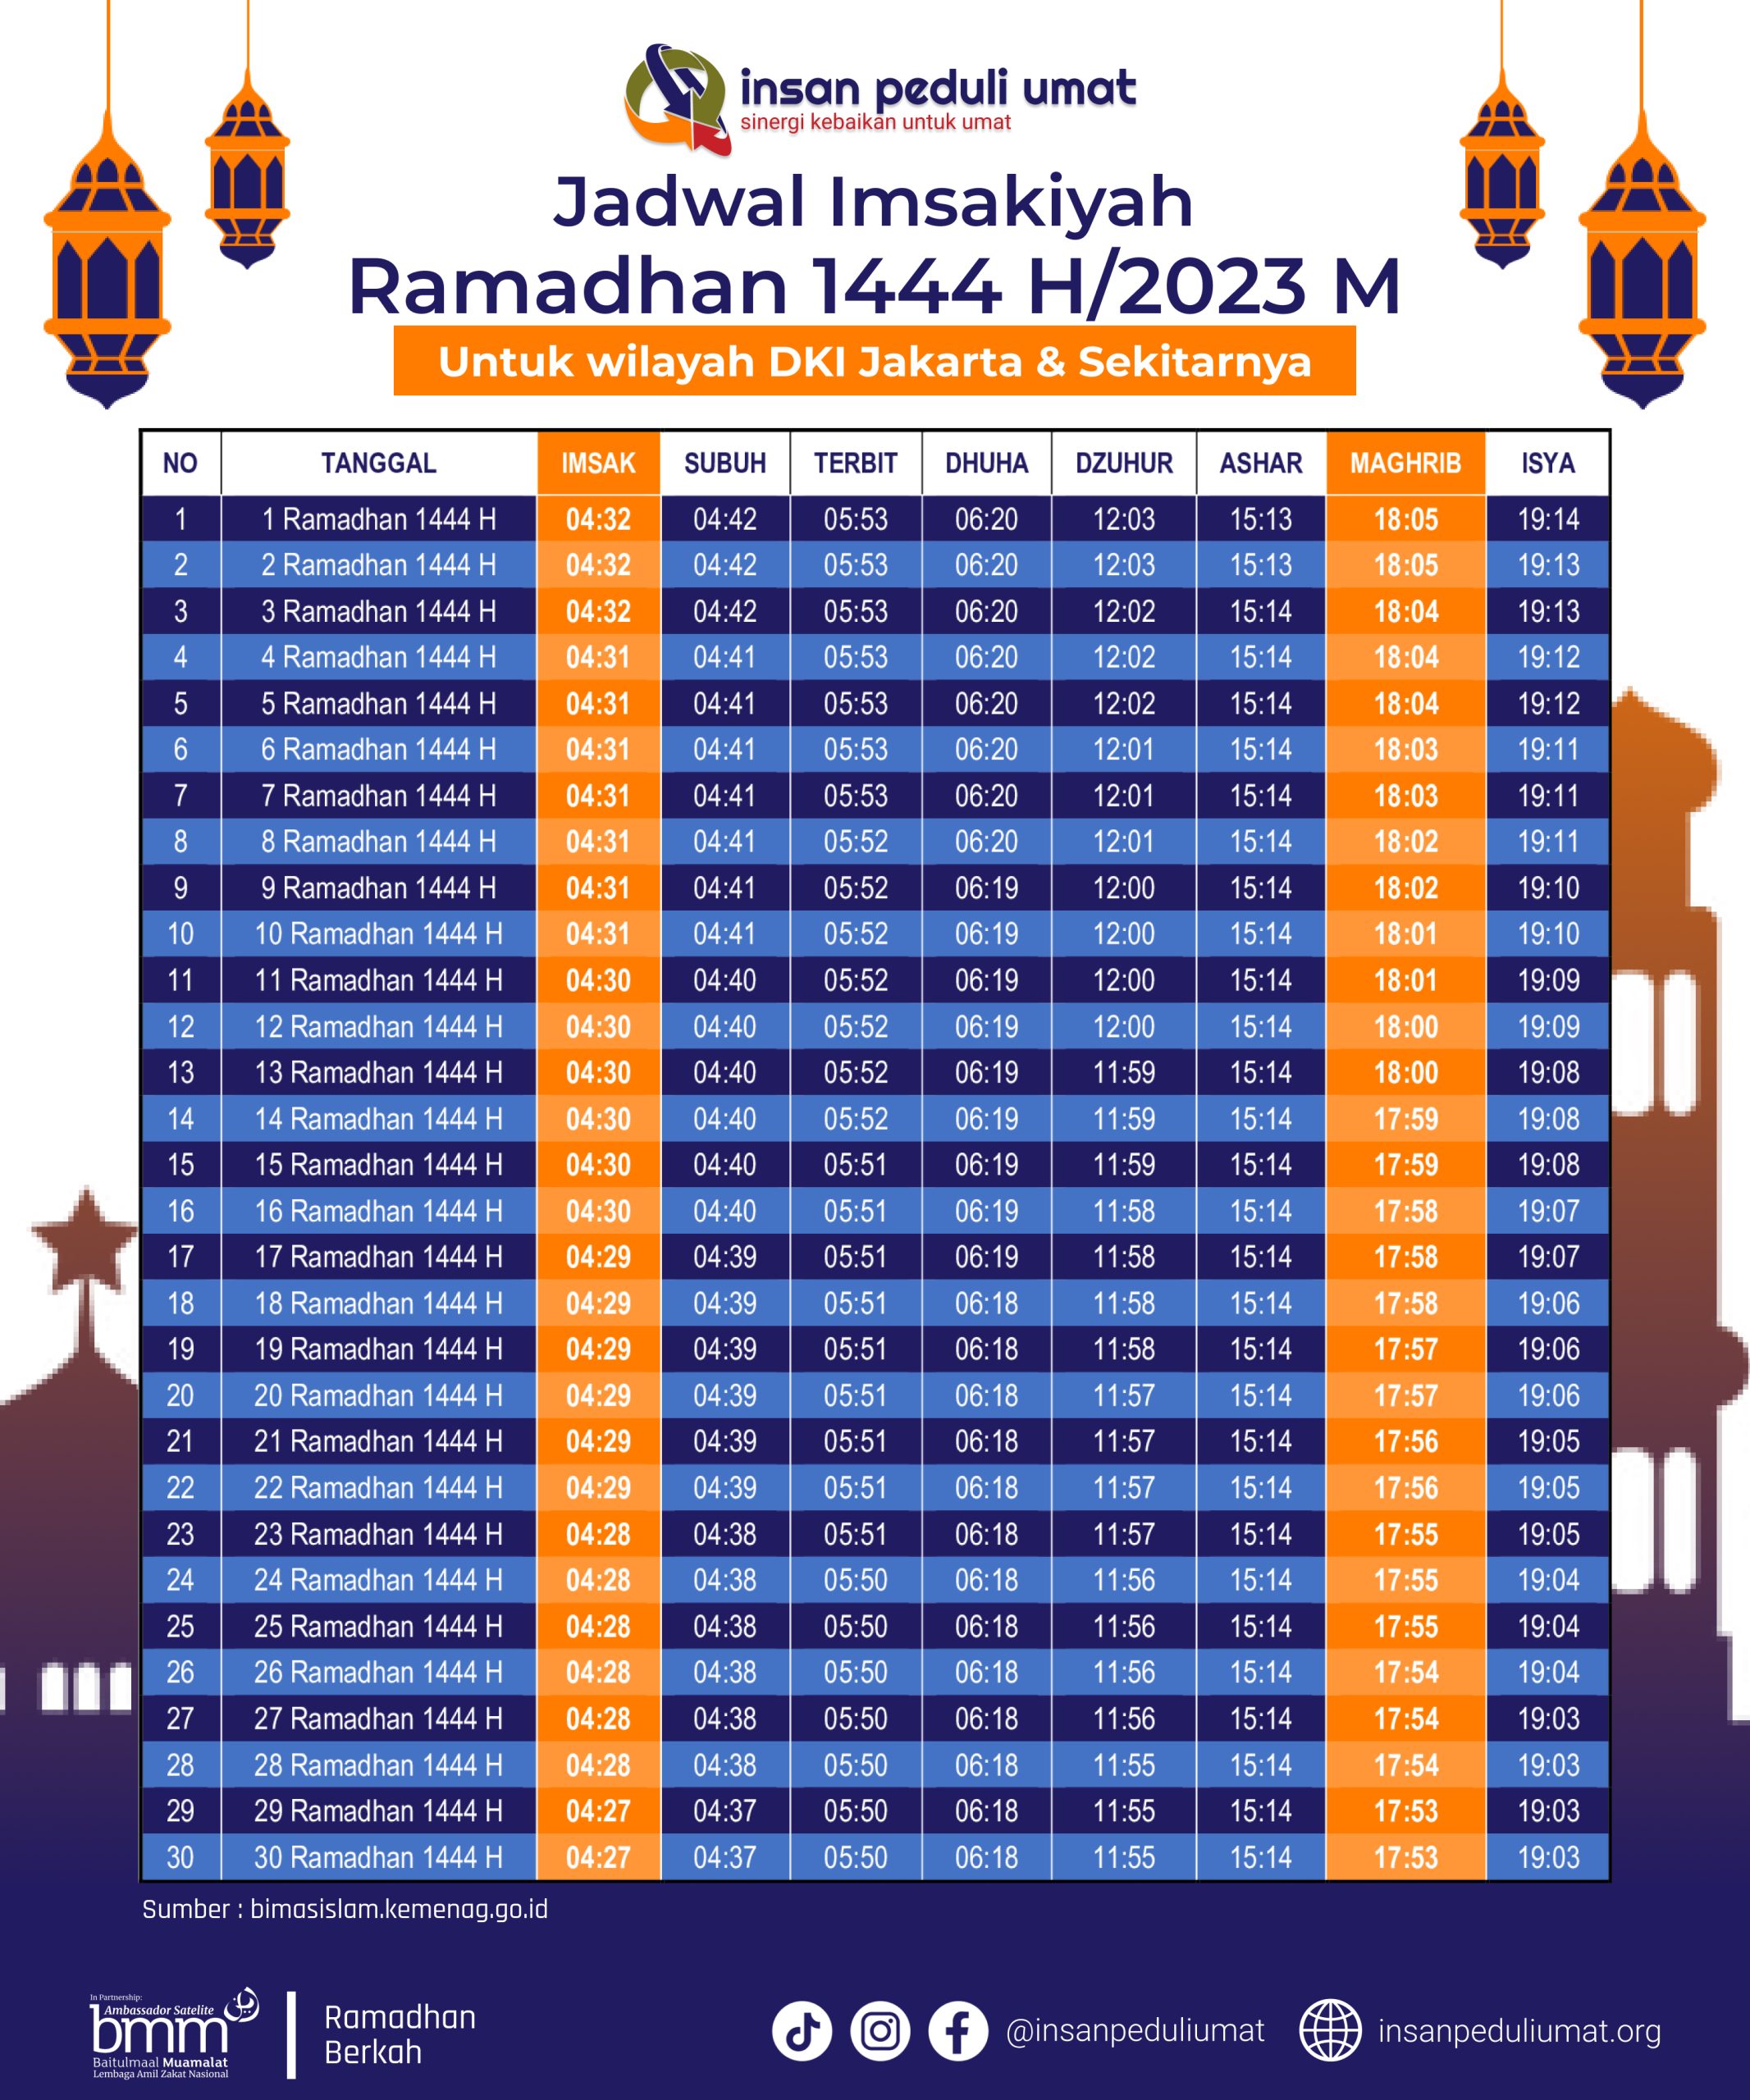 Jadwal Imsakiyah IPU Scaled 